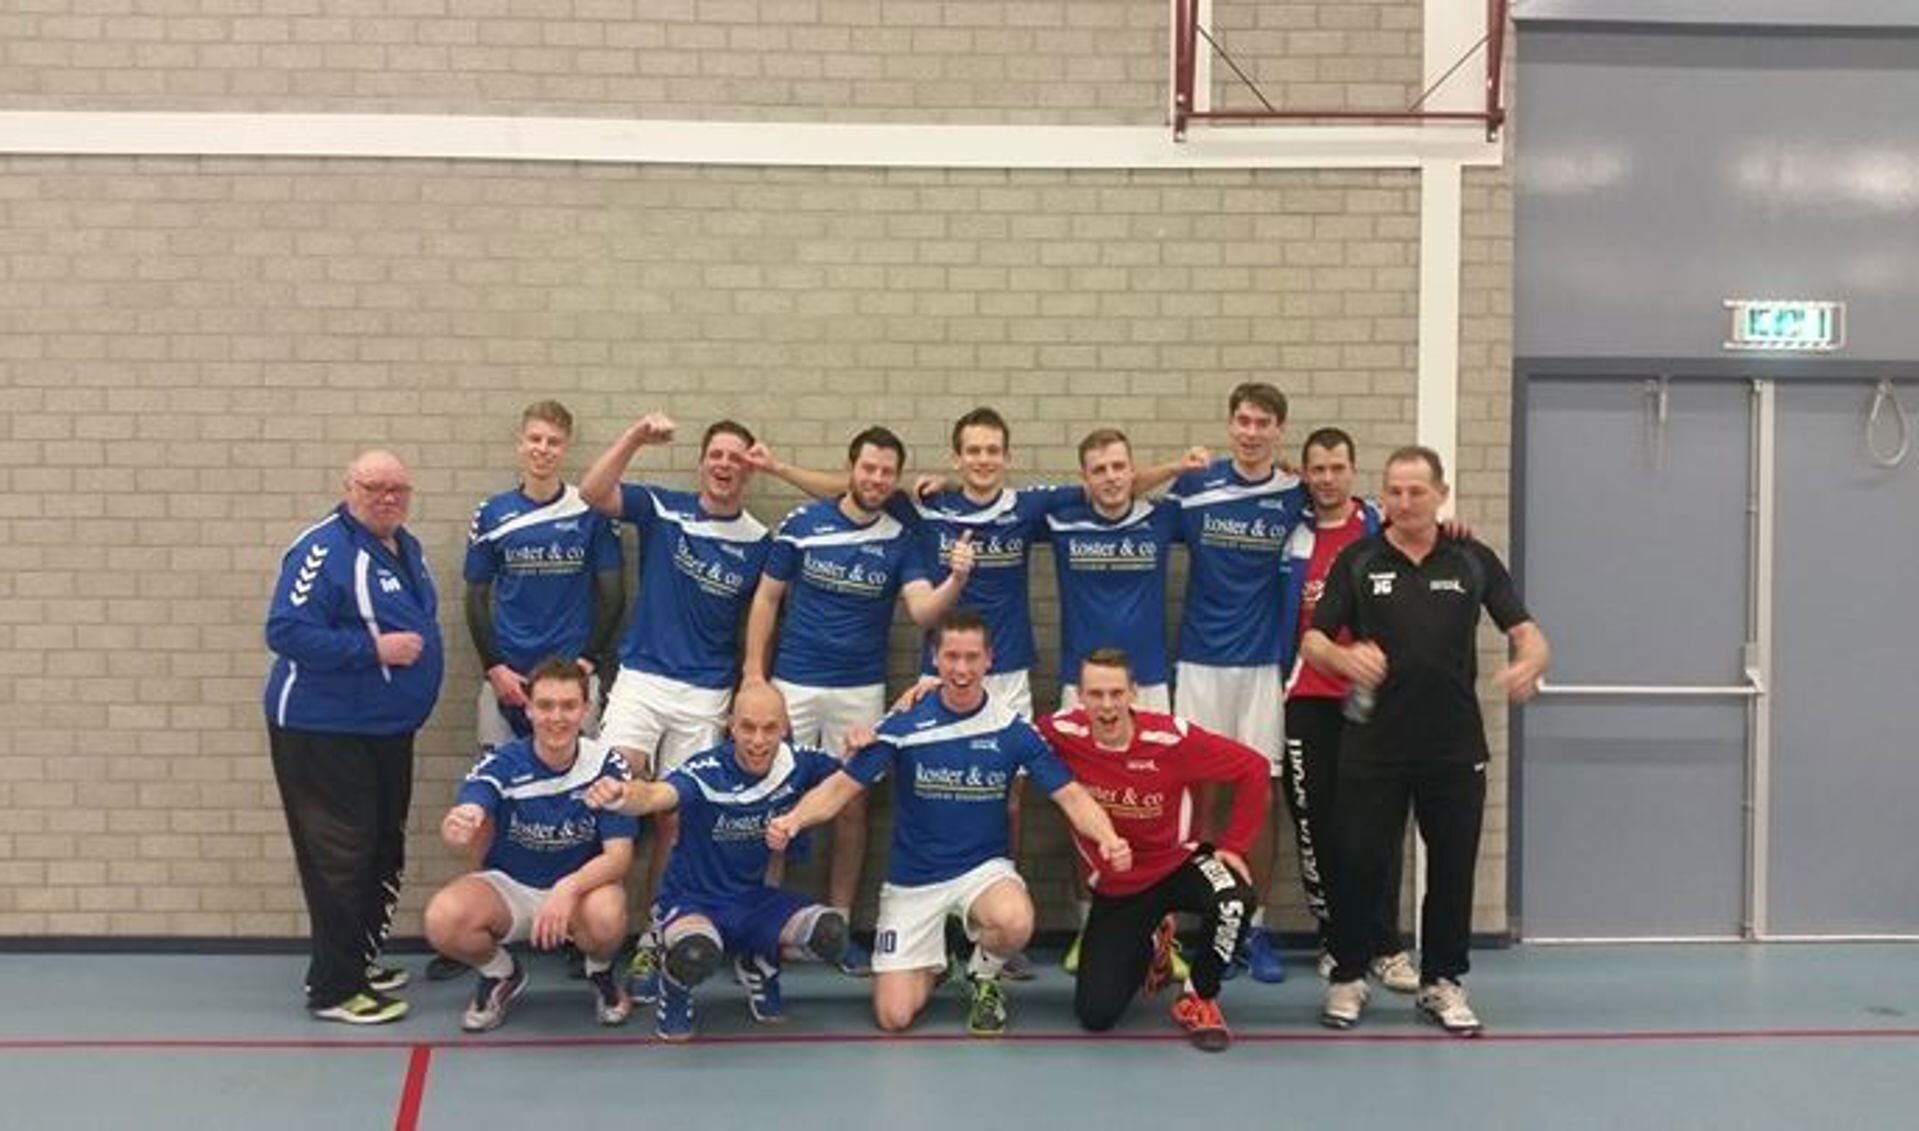 Handballers Delta Sport zetten nette reeks neer (update)